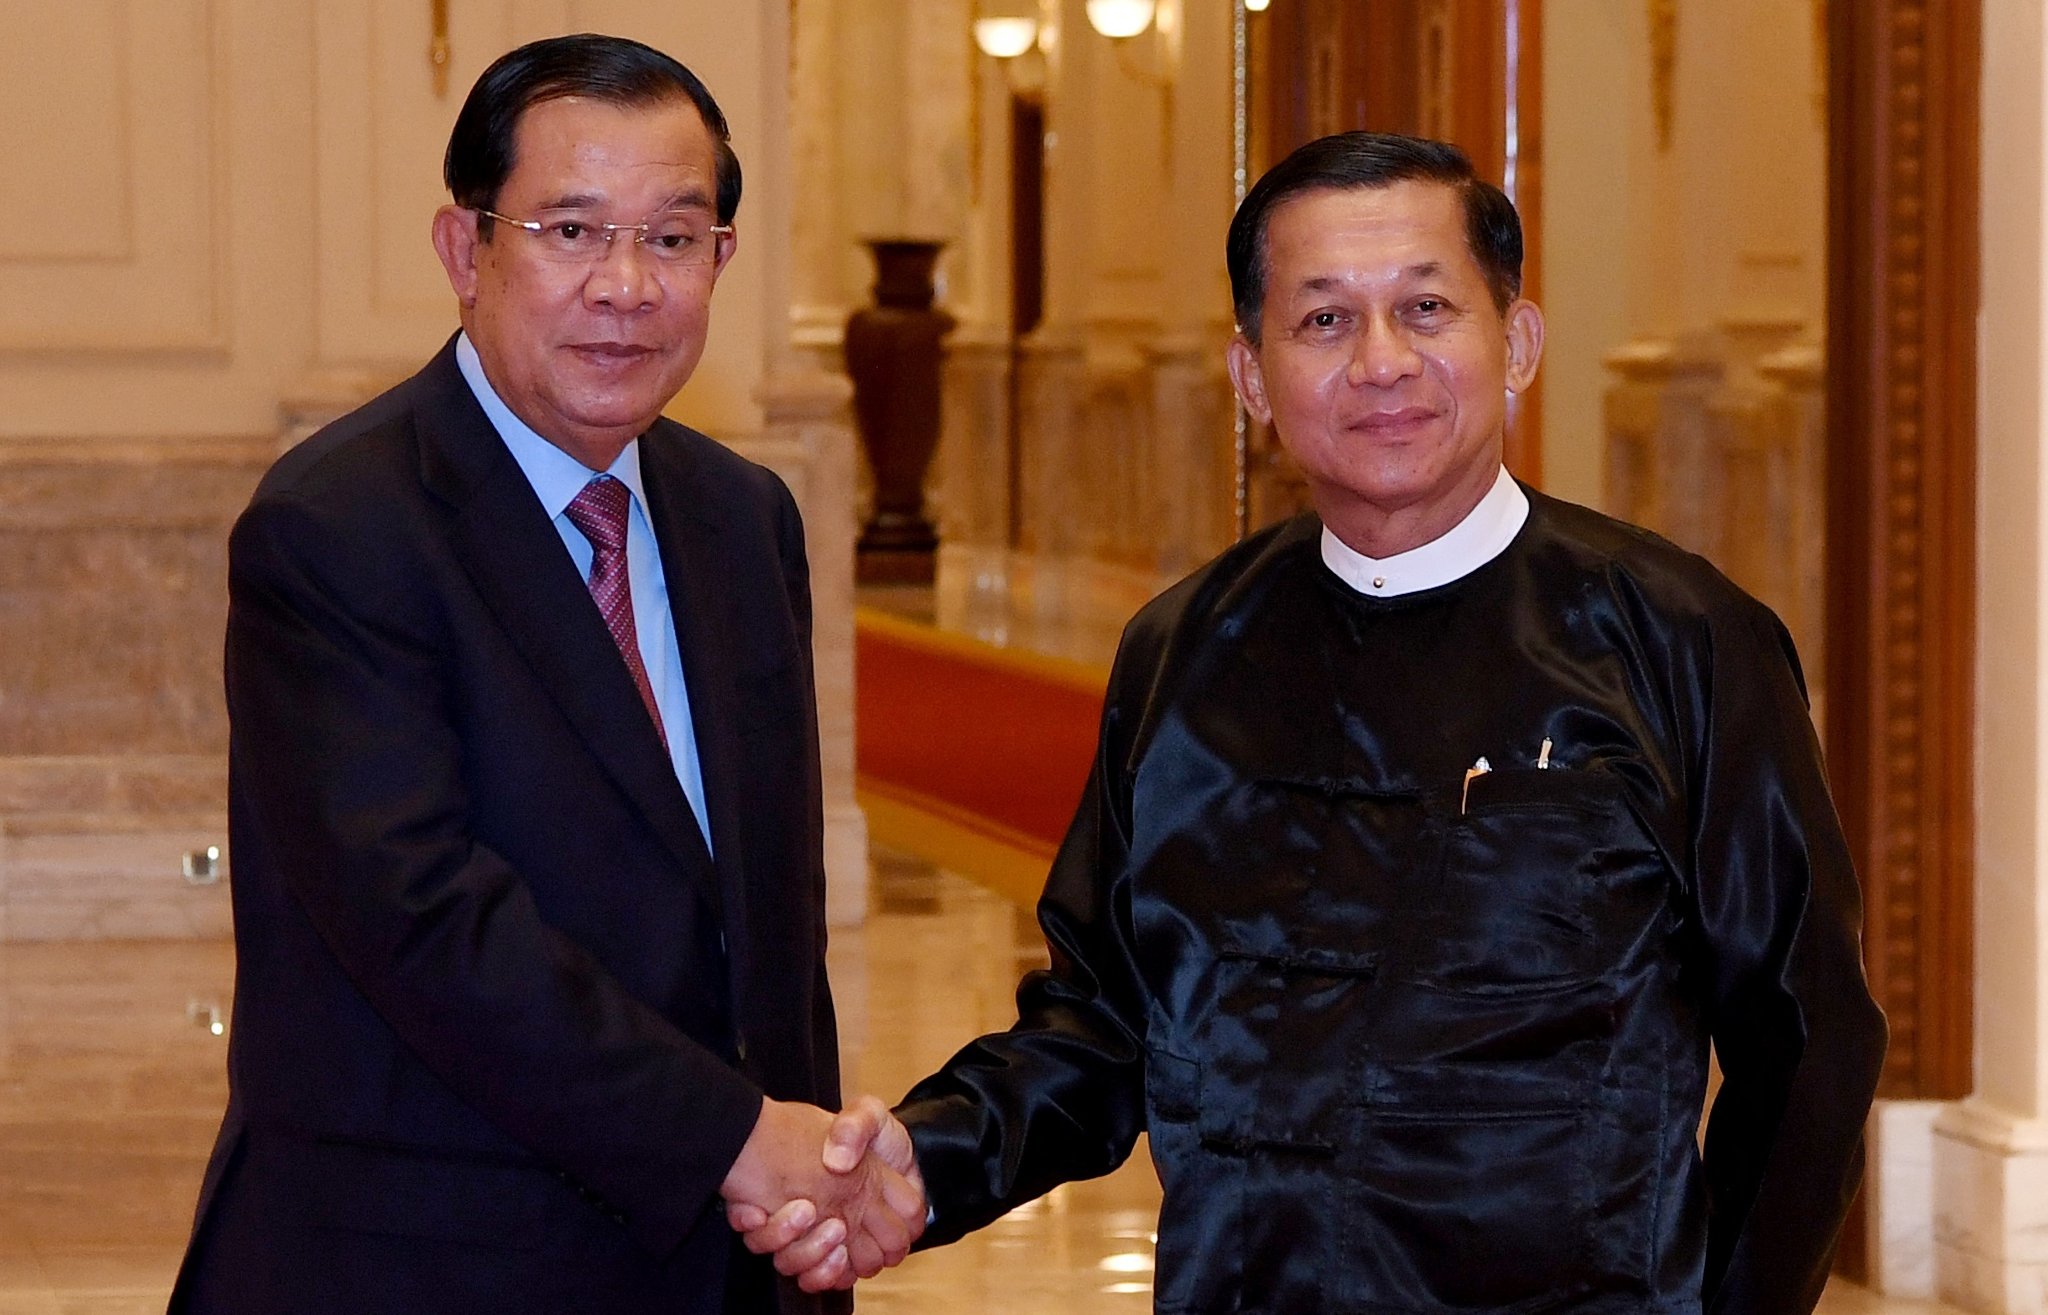 လူပုံအလယ်မှာ ဖိနပ်နဲ့ ပစ်ပေါက်ခံရတာဟာ ပြဿနာအသေးအမွှား မဟုတ်ဘူးလို့ ကမ္ဘောဒီးယားဝန်ကြီးချုပ် ဟွန်ဆန် ပြော